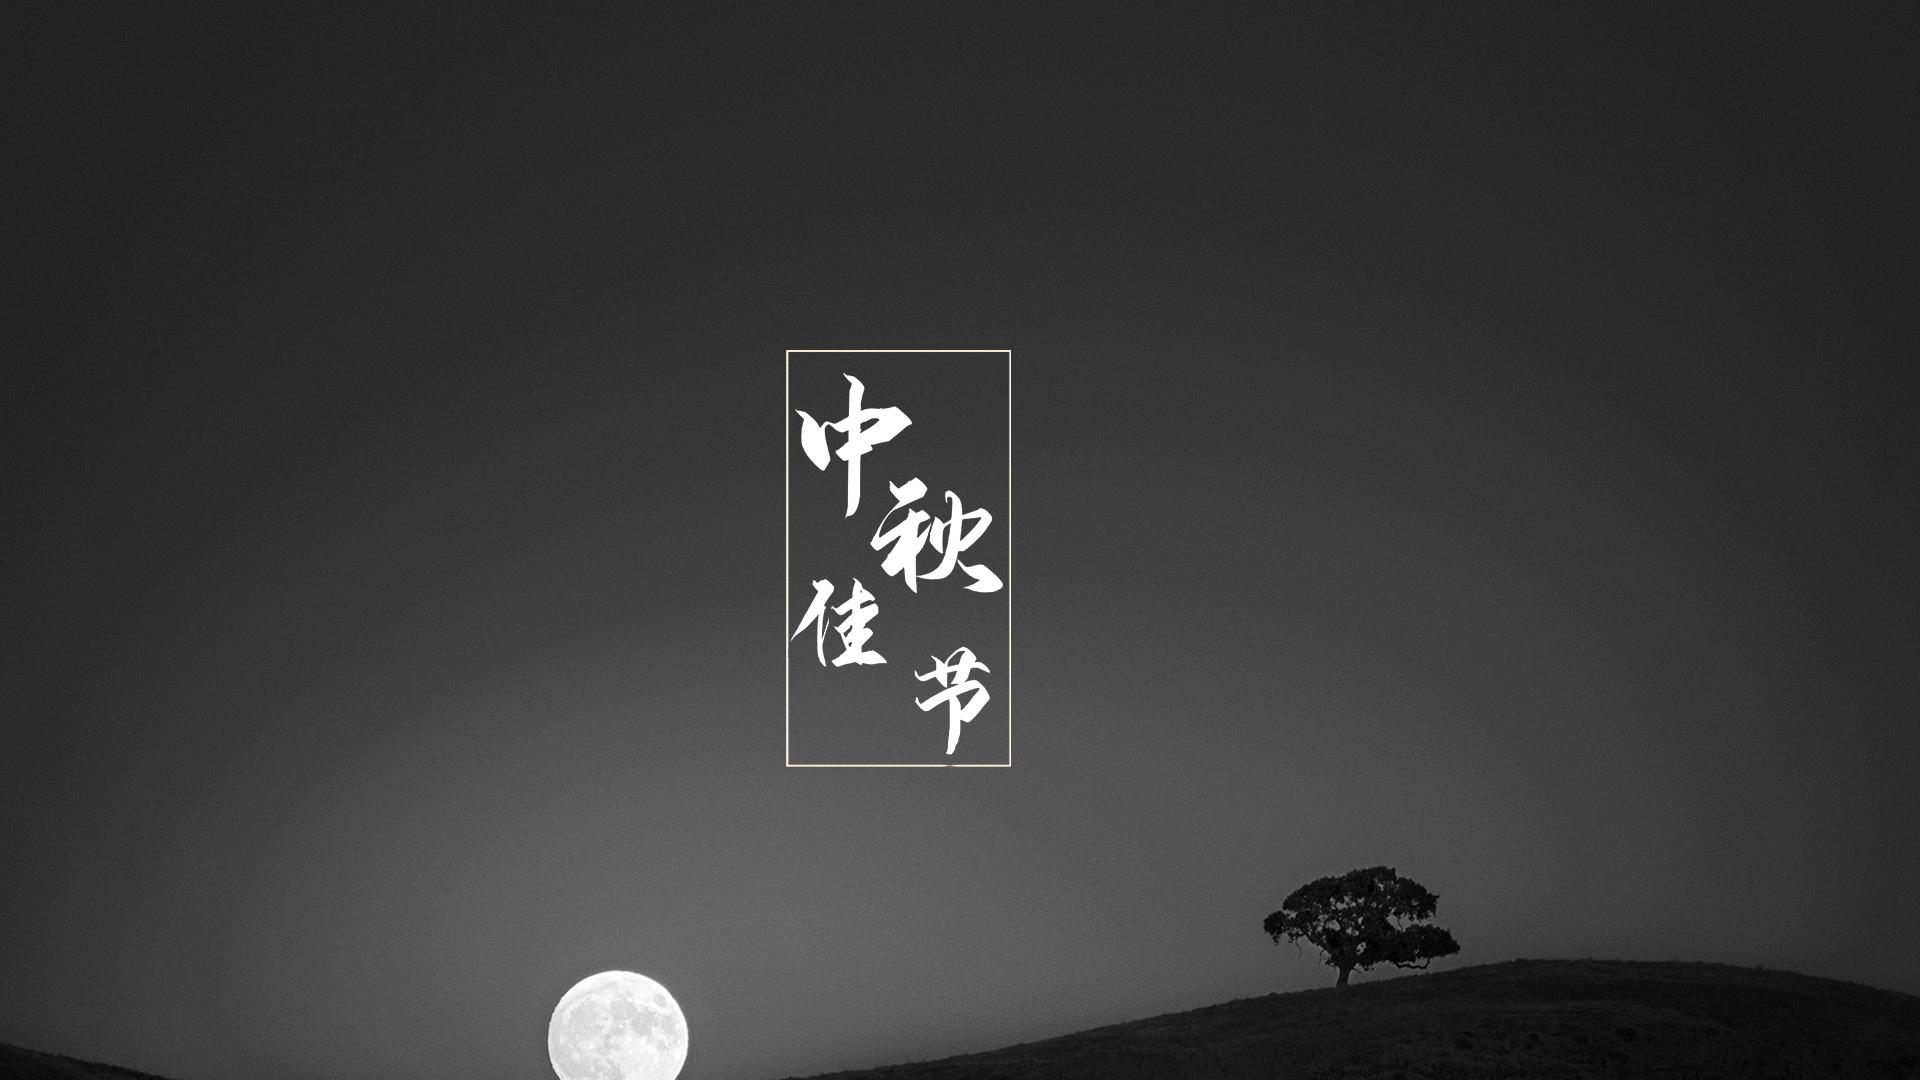 中秋佳节唯美月光图片桌面壁纸